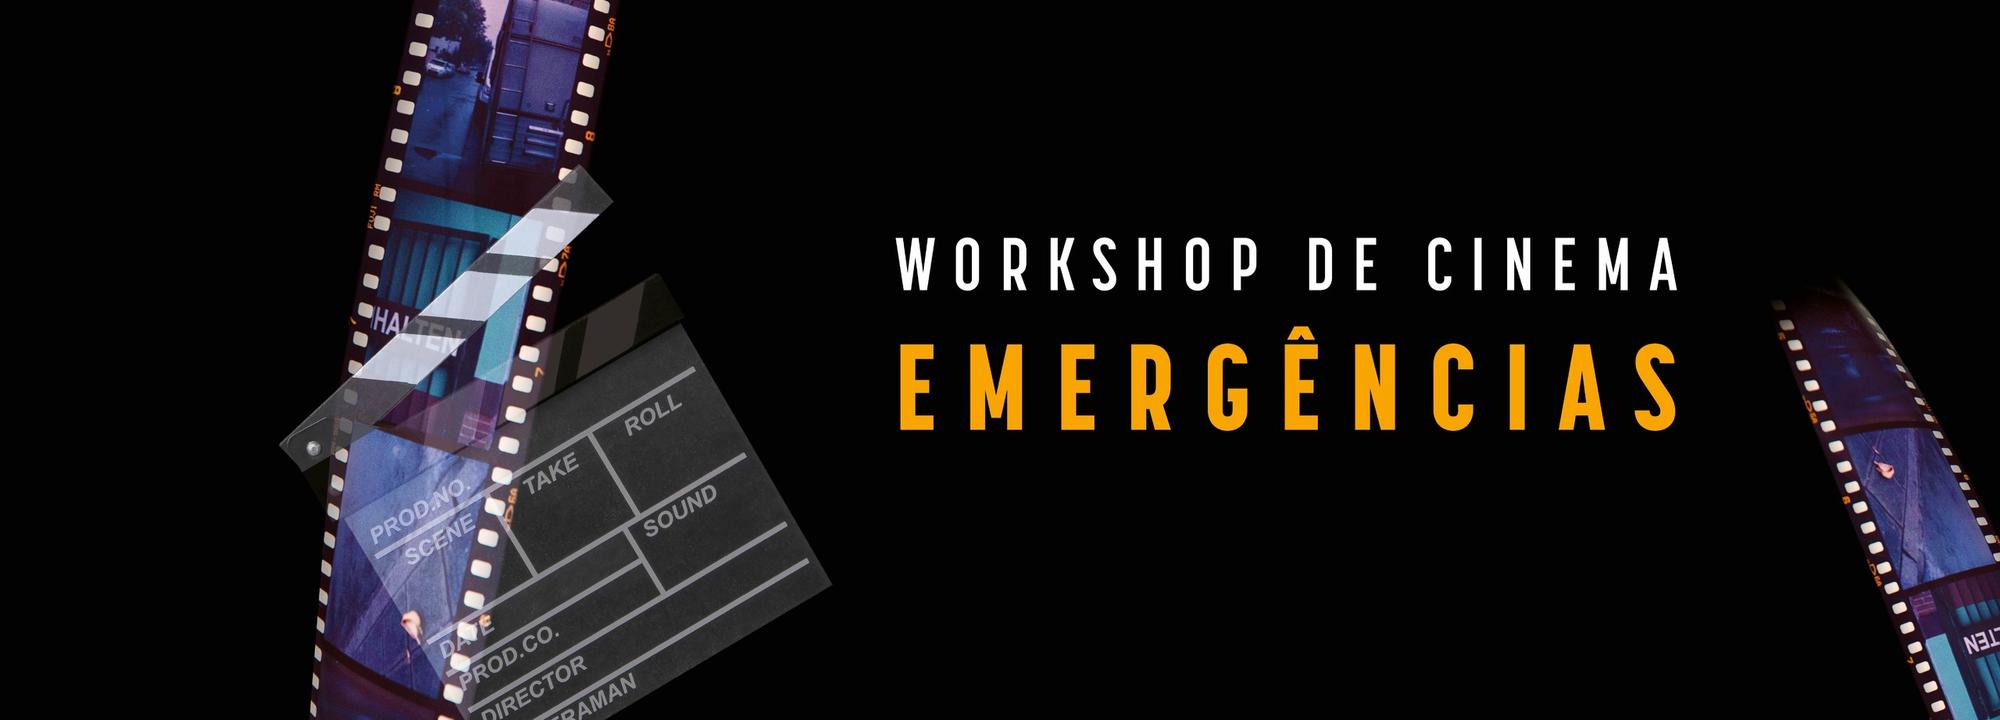 Workshop de cinema “Emergências” - o mundo do cinema para lá da tela